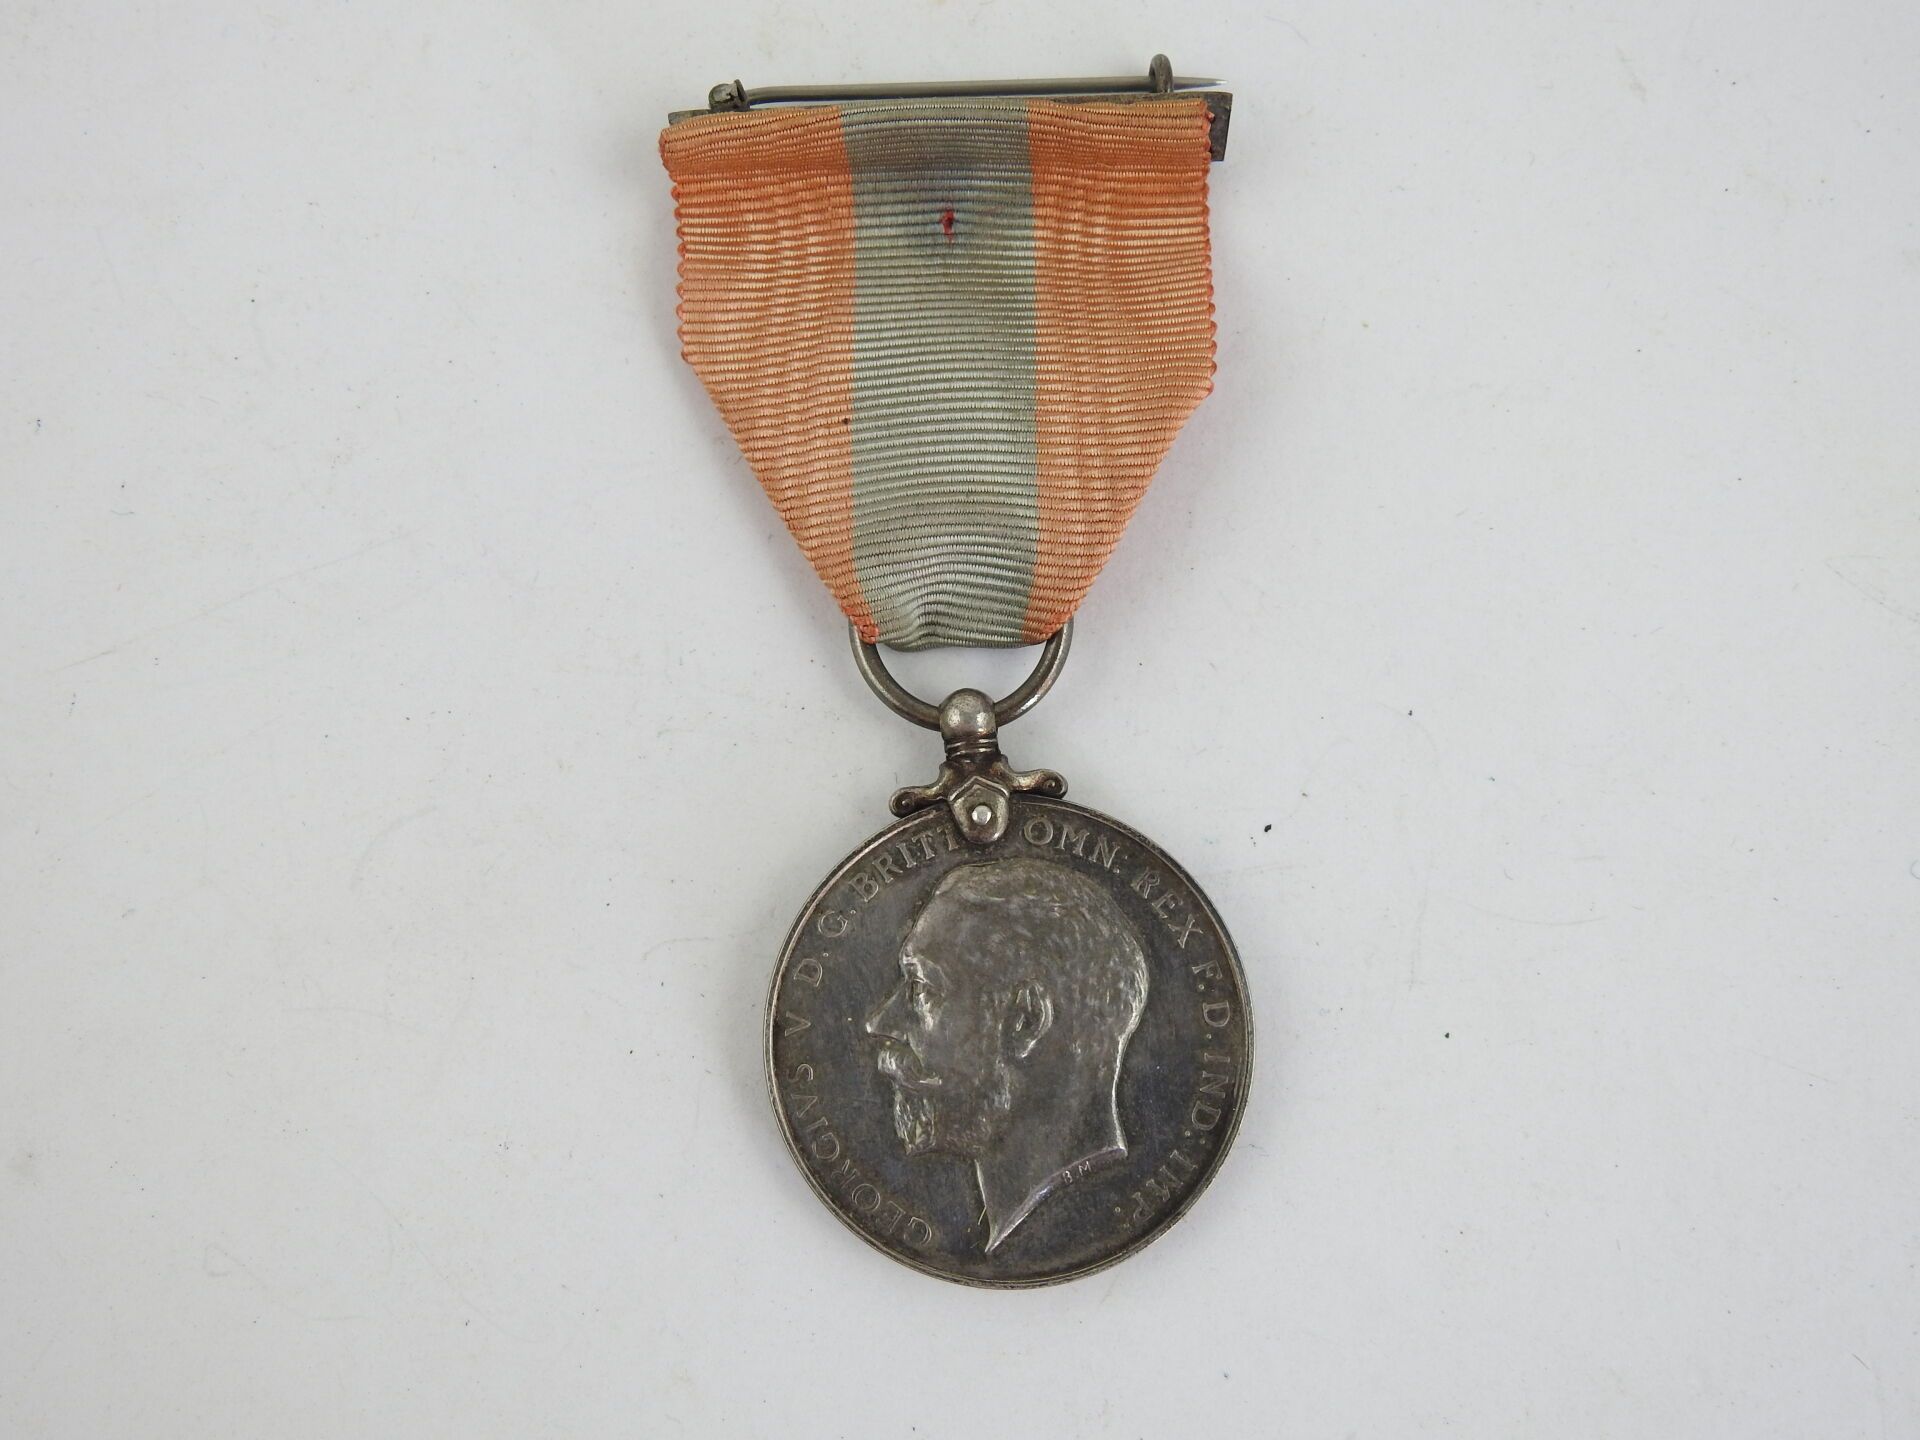 Null 装饰品。英国。乔治五世统治时期（1910-1936年）的忠诚服务奖章，授予乔治-戈登，并有丝带镶嵌。ABE